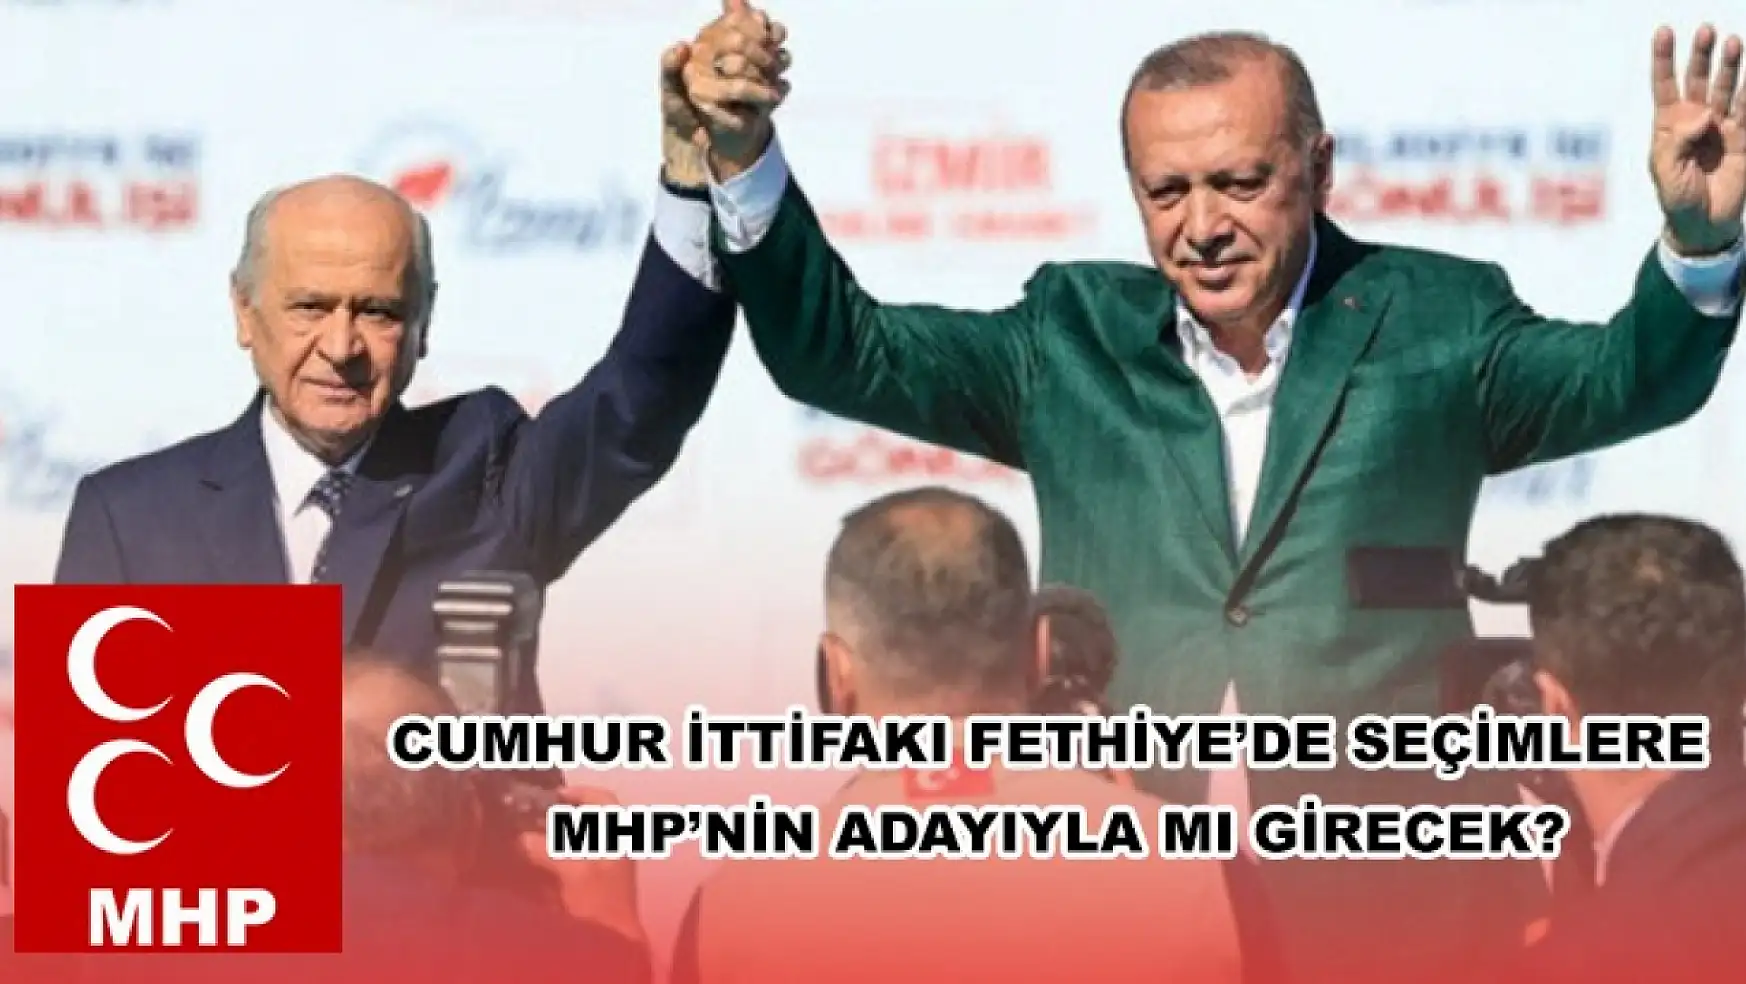 Cumhur İttifakı Fethiye'de Seçimlere MHP'nin Adayıyla Mı Girecek?